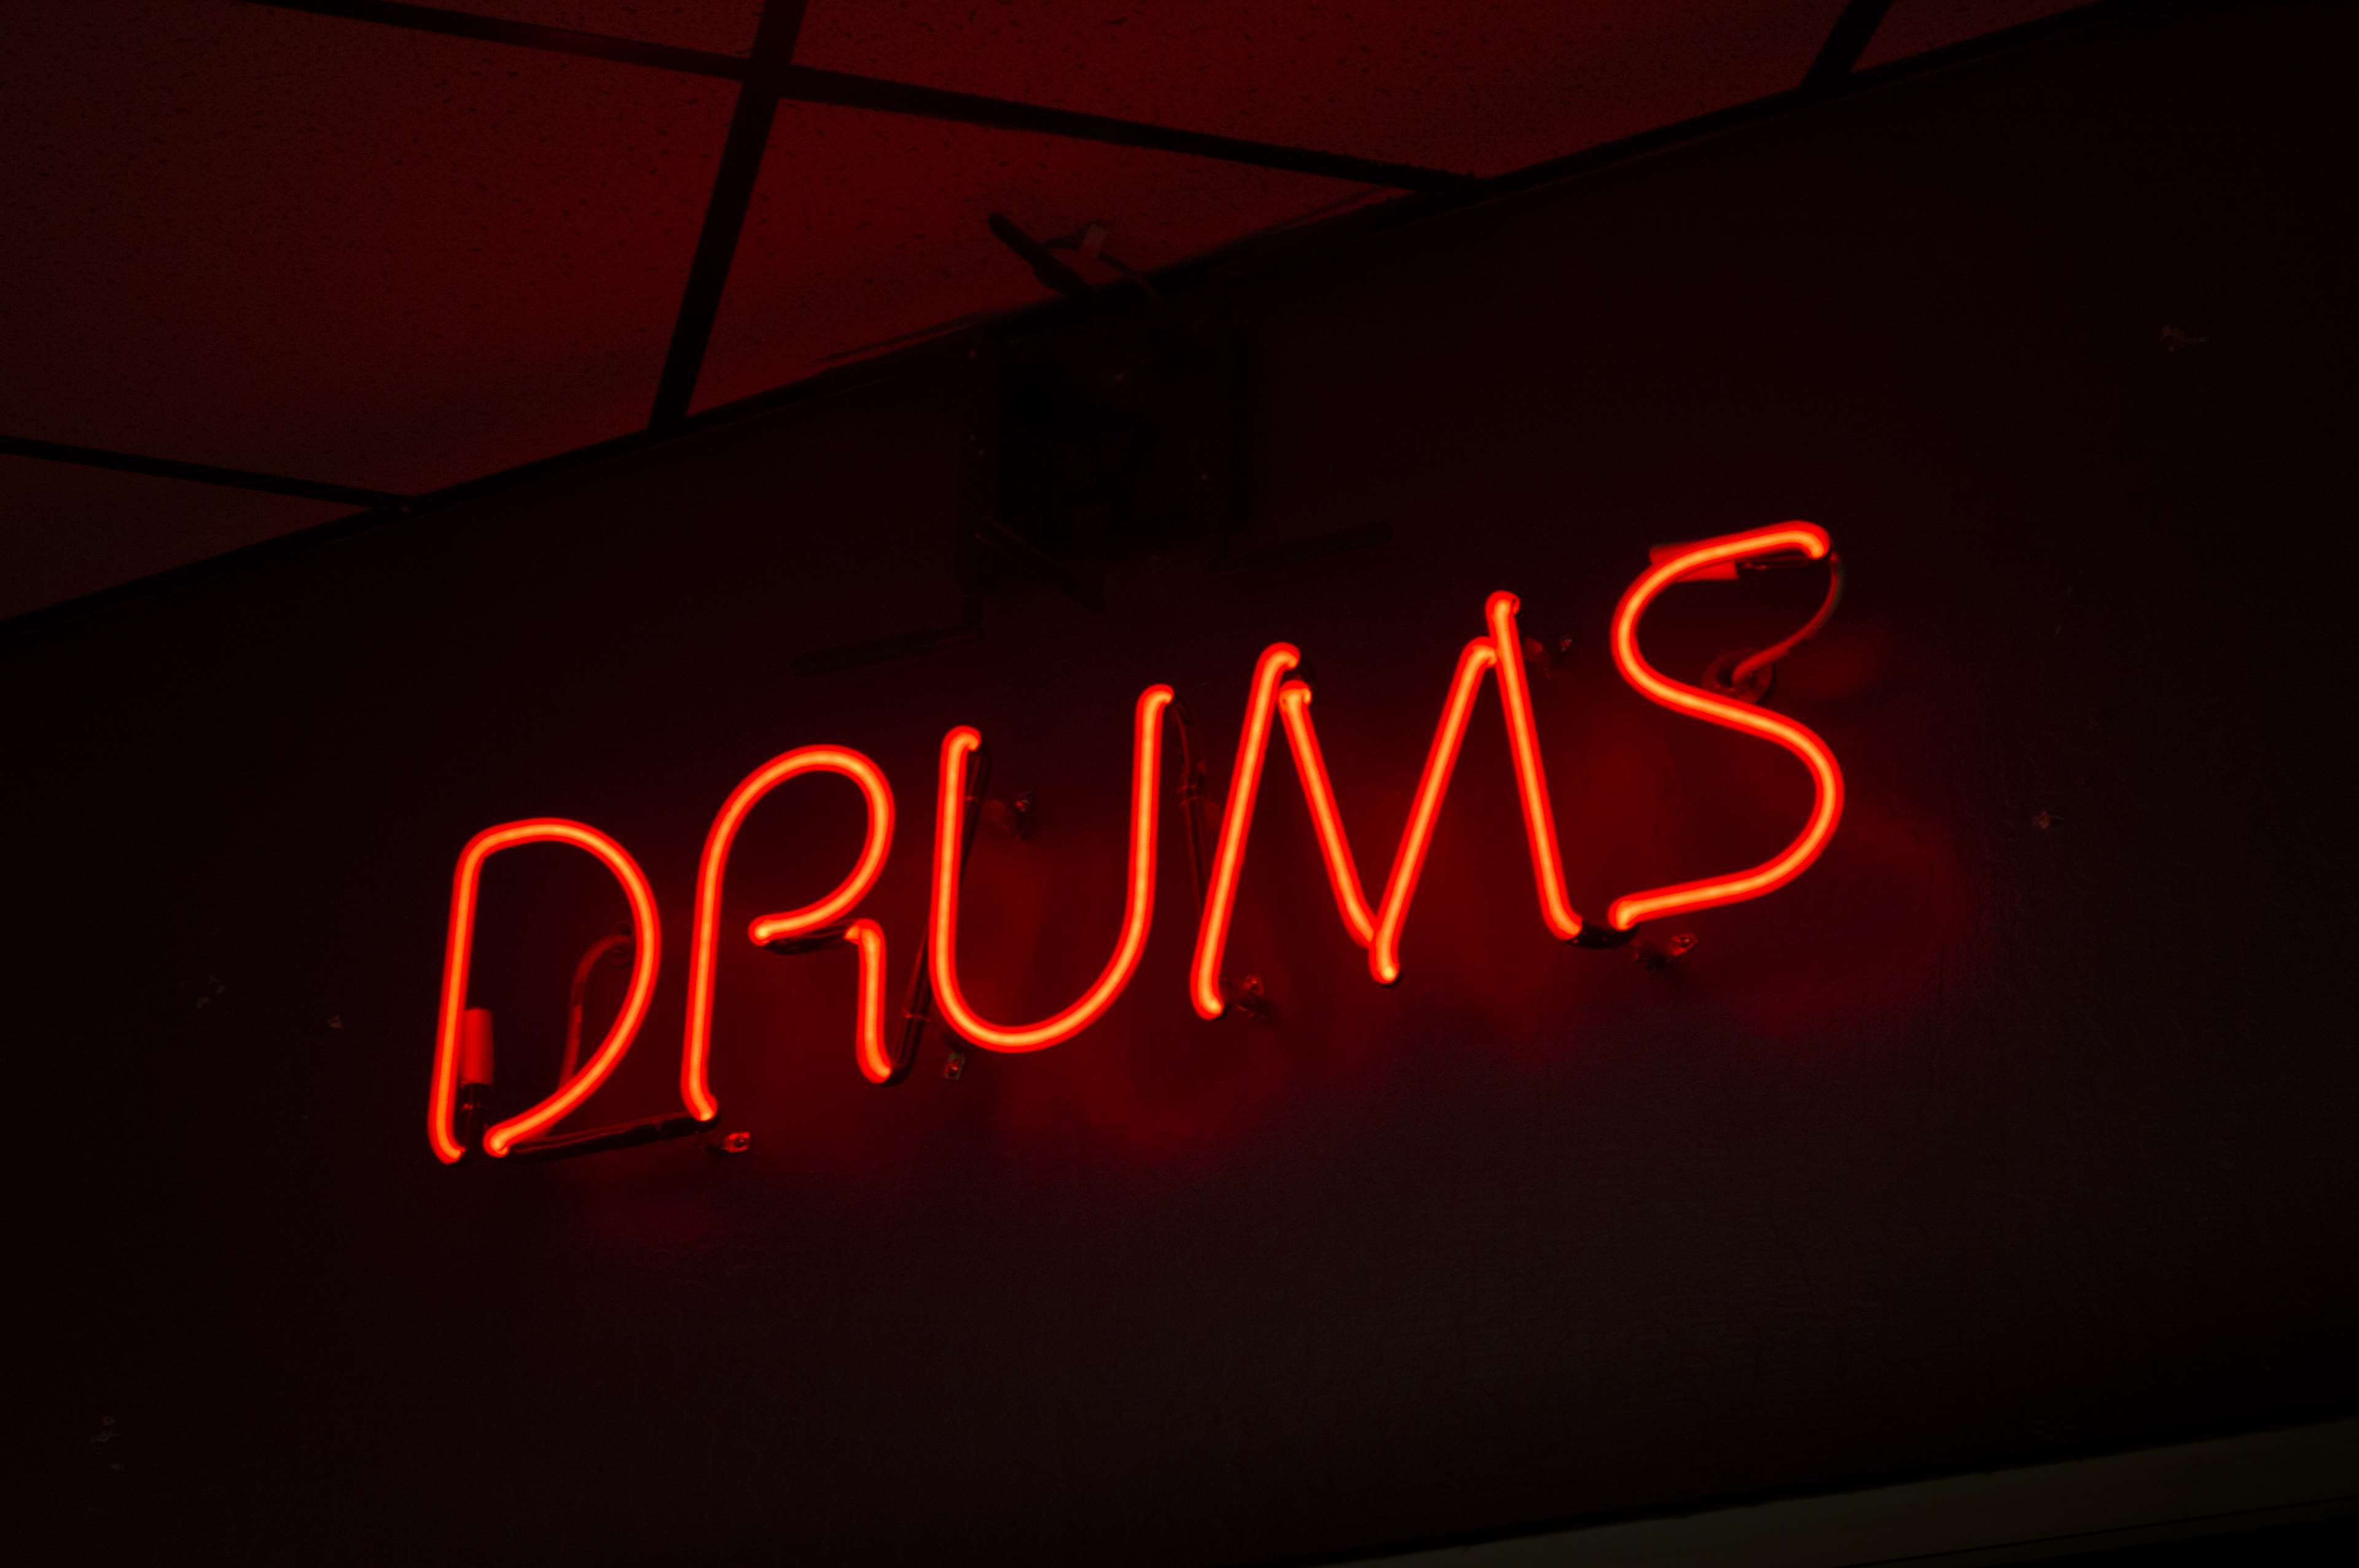 drummer, drums, light, lights, music, musician, neon, neon